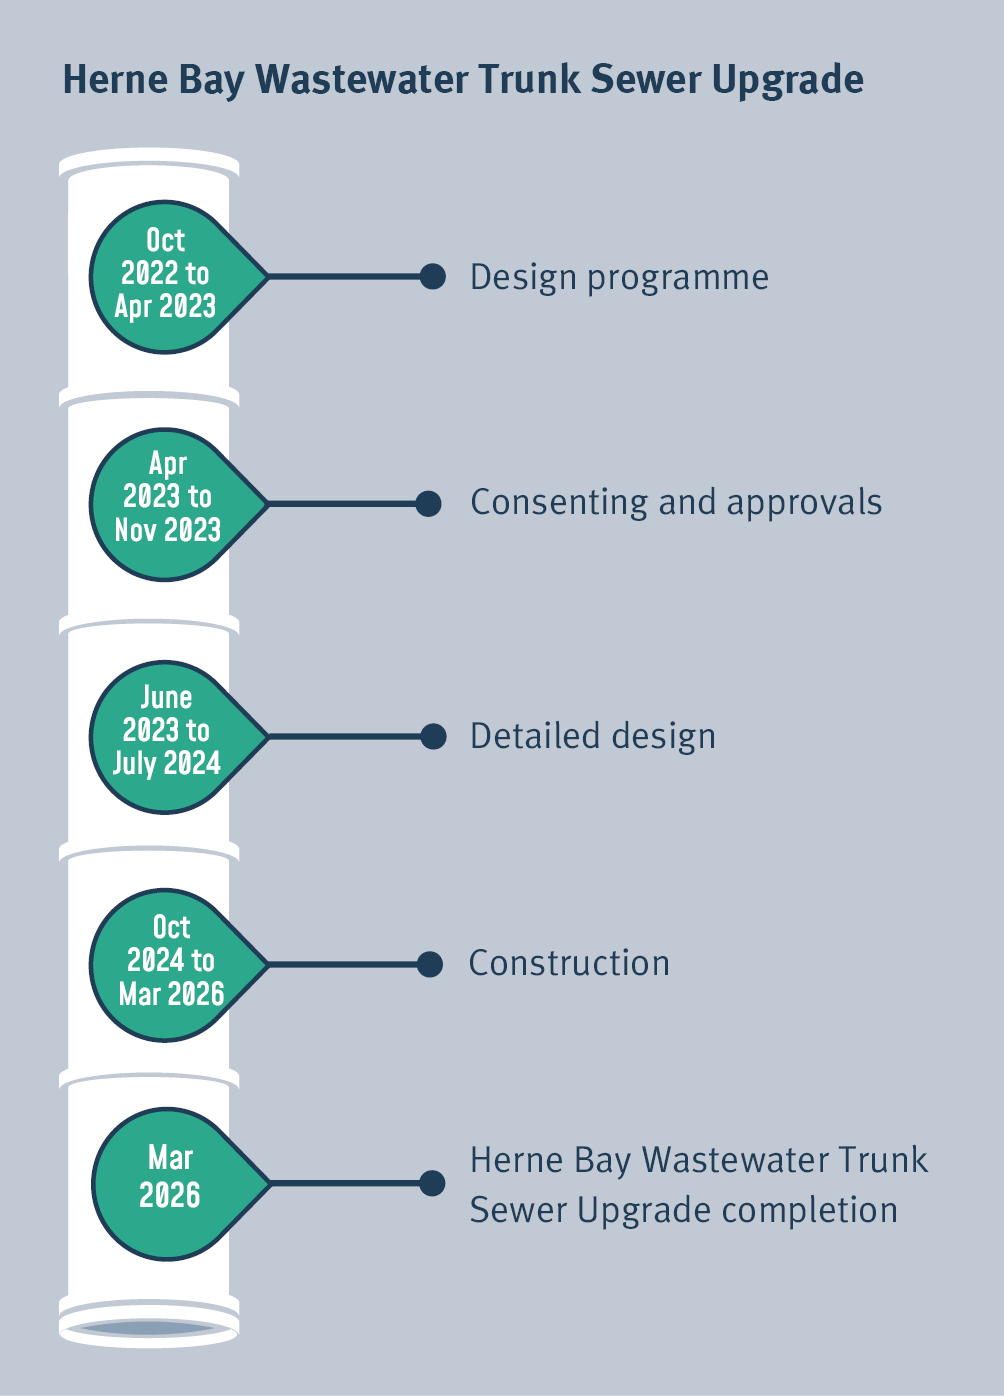 Herne Bay wastewater trunk sewer upgrade timeline